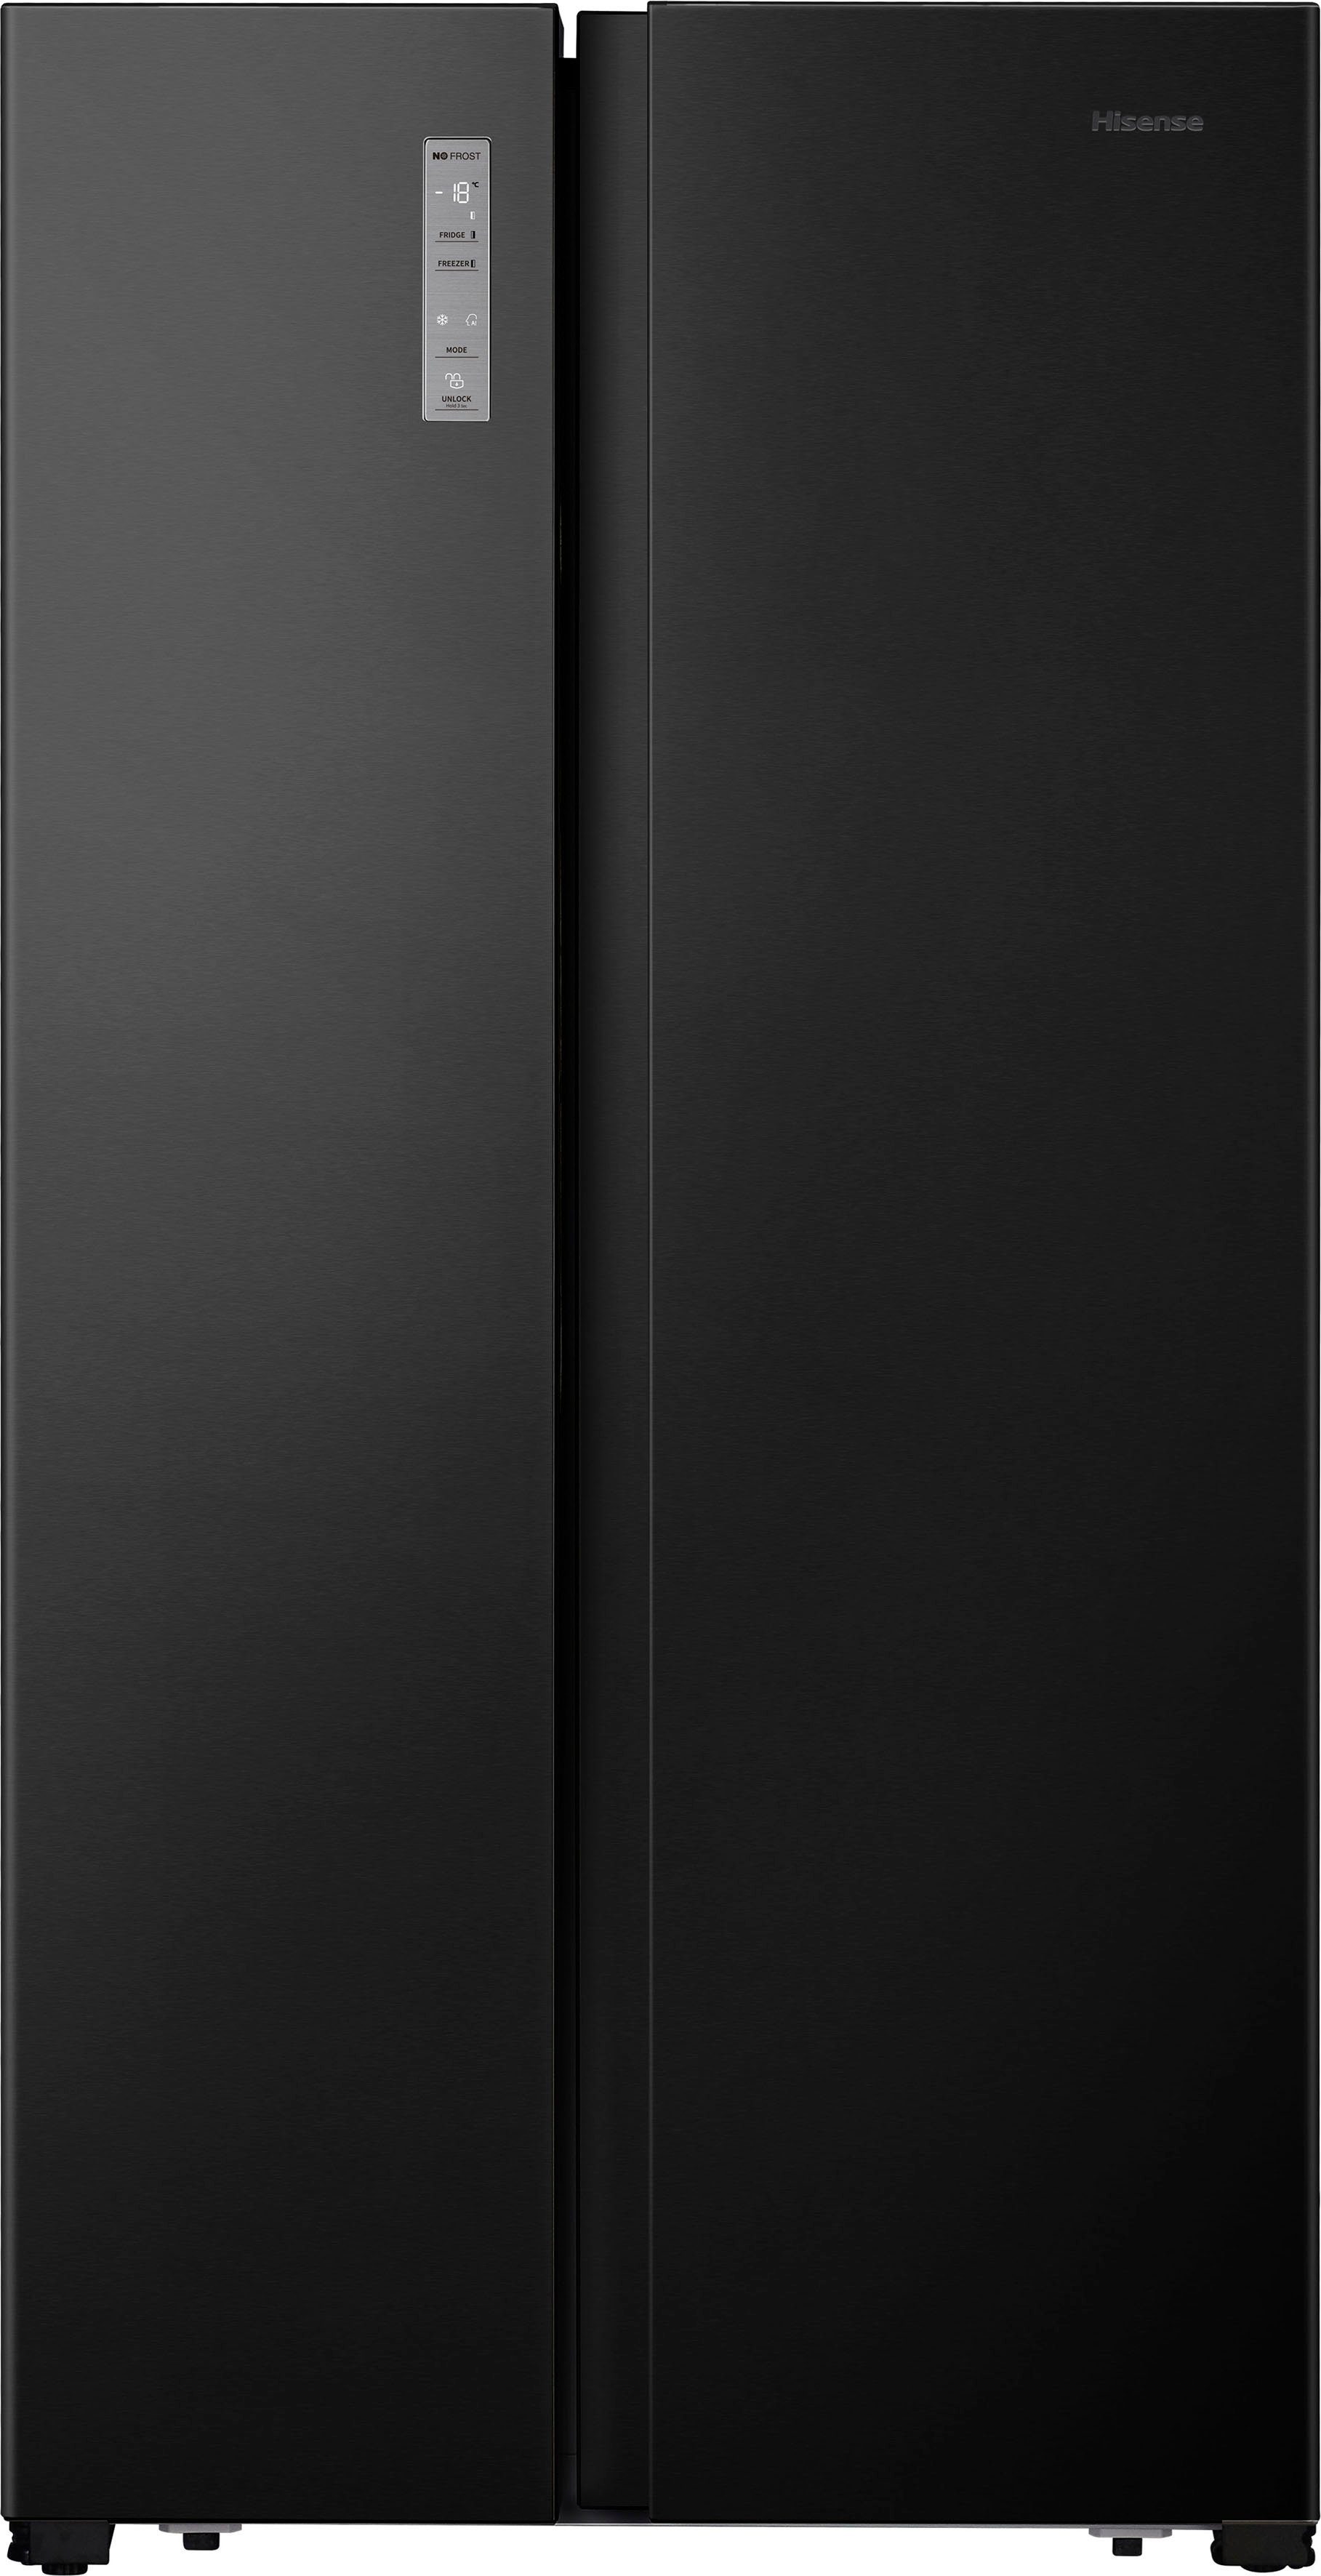 Hisense Side-by-Side MS91518FC, 178,6 cm hoch, 91 cm breit, 4 Jahre  Herstellergarantie | Side-by-Side Kühlschränke